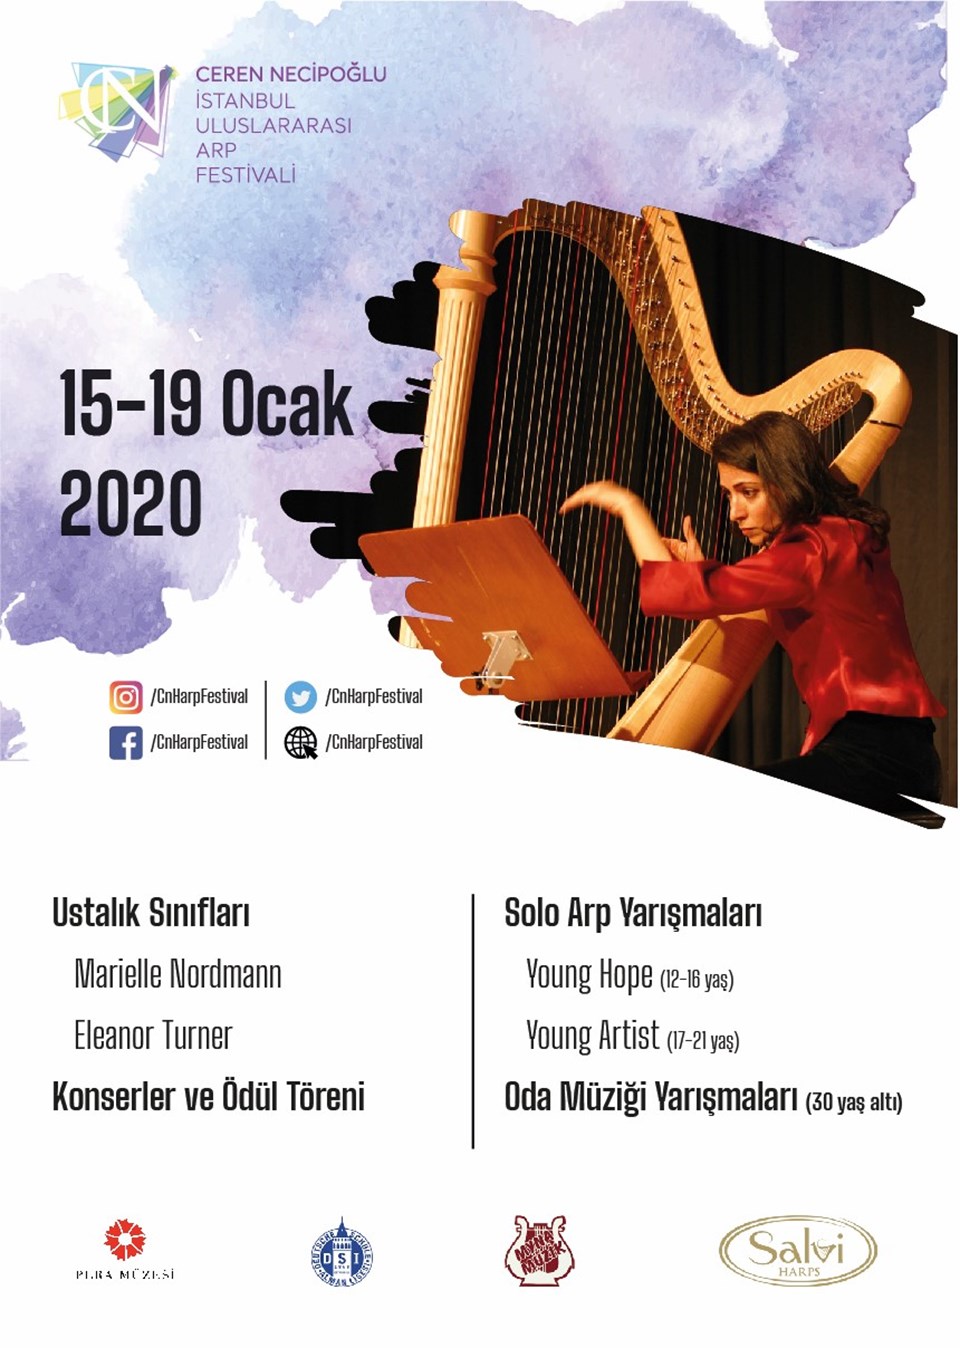 Uçak kazasında hayatını kaybeden arp sanatçısı Ceren Necipoğlu’nun anısına Ceren Necipoğlu İstanbul Uluslararası Arp Festivali düzenleniyor - 1